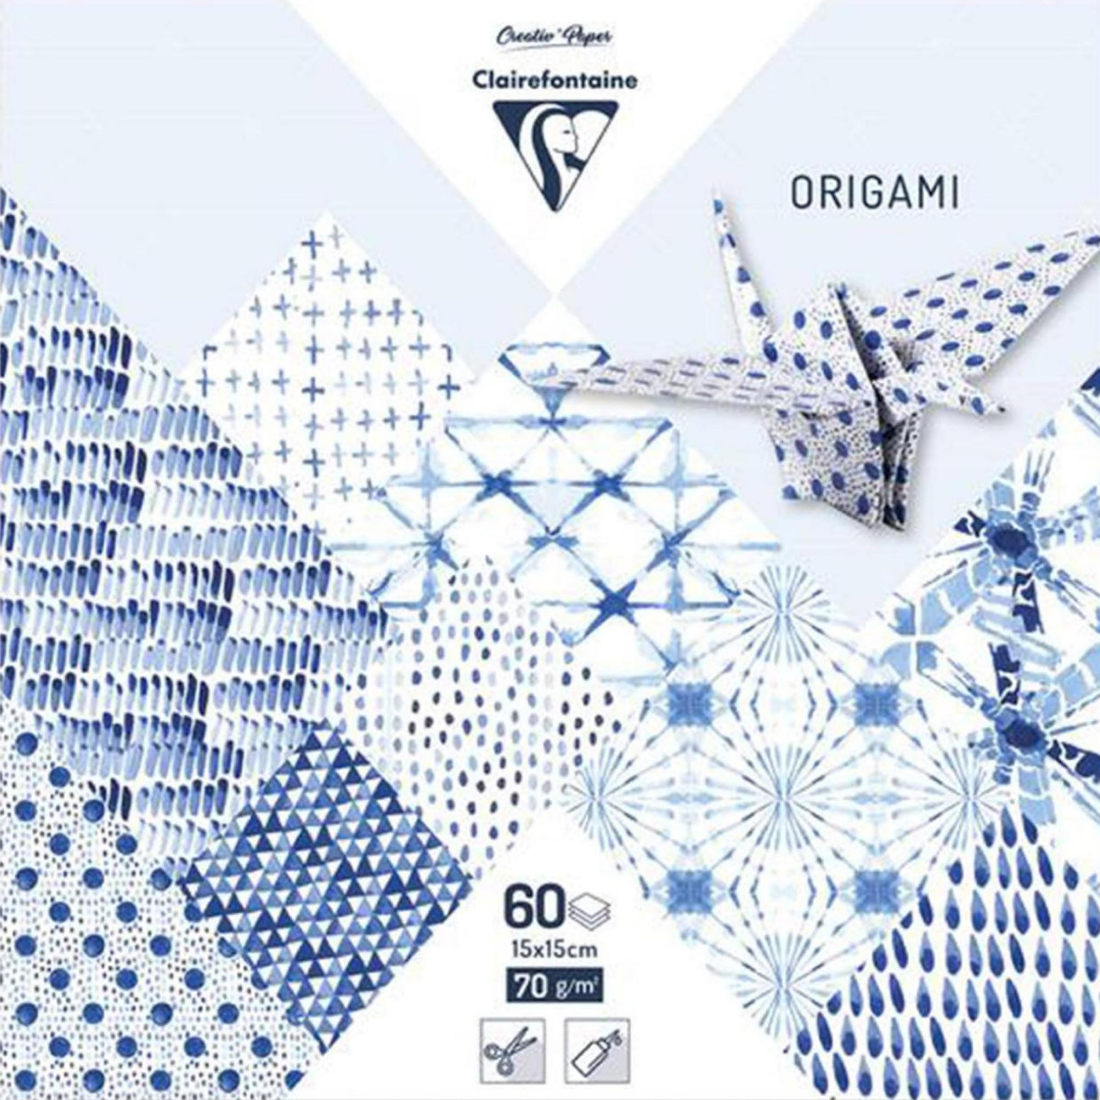 Papel Origami Shibori da Clairefontaine